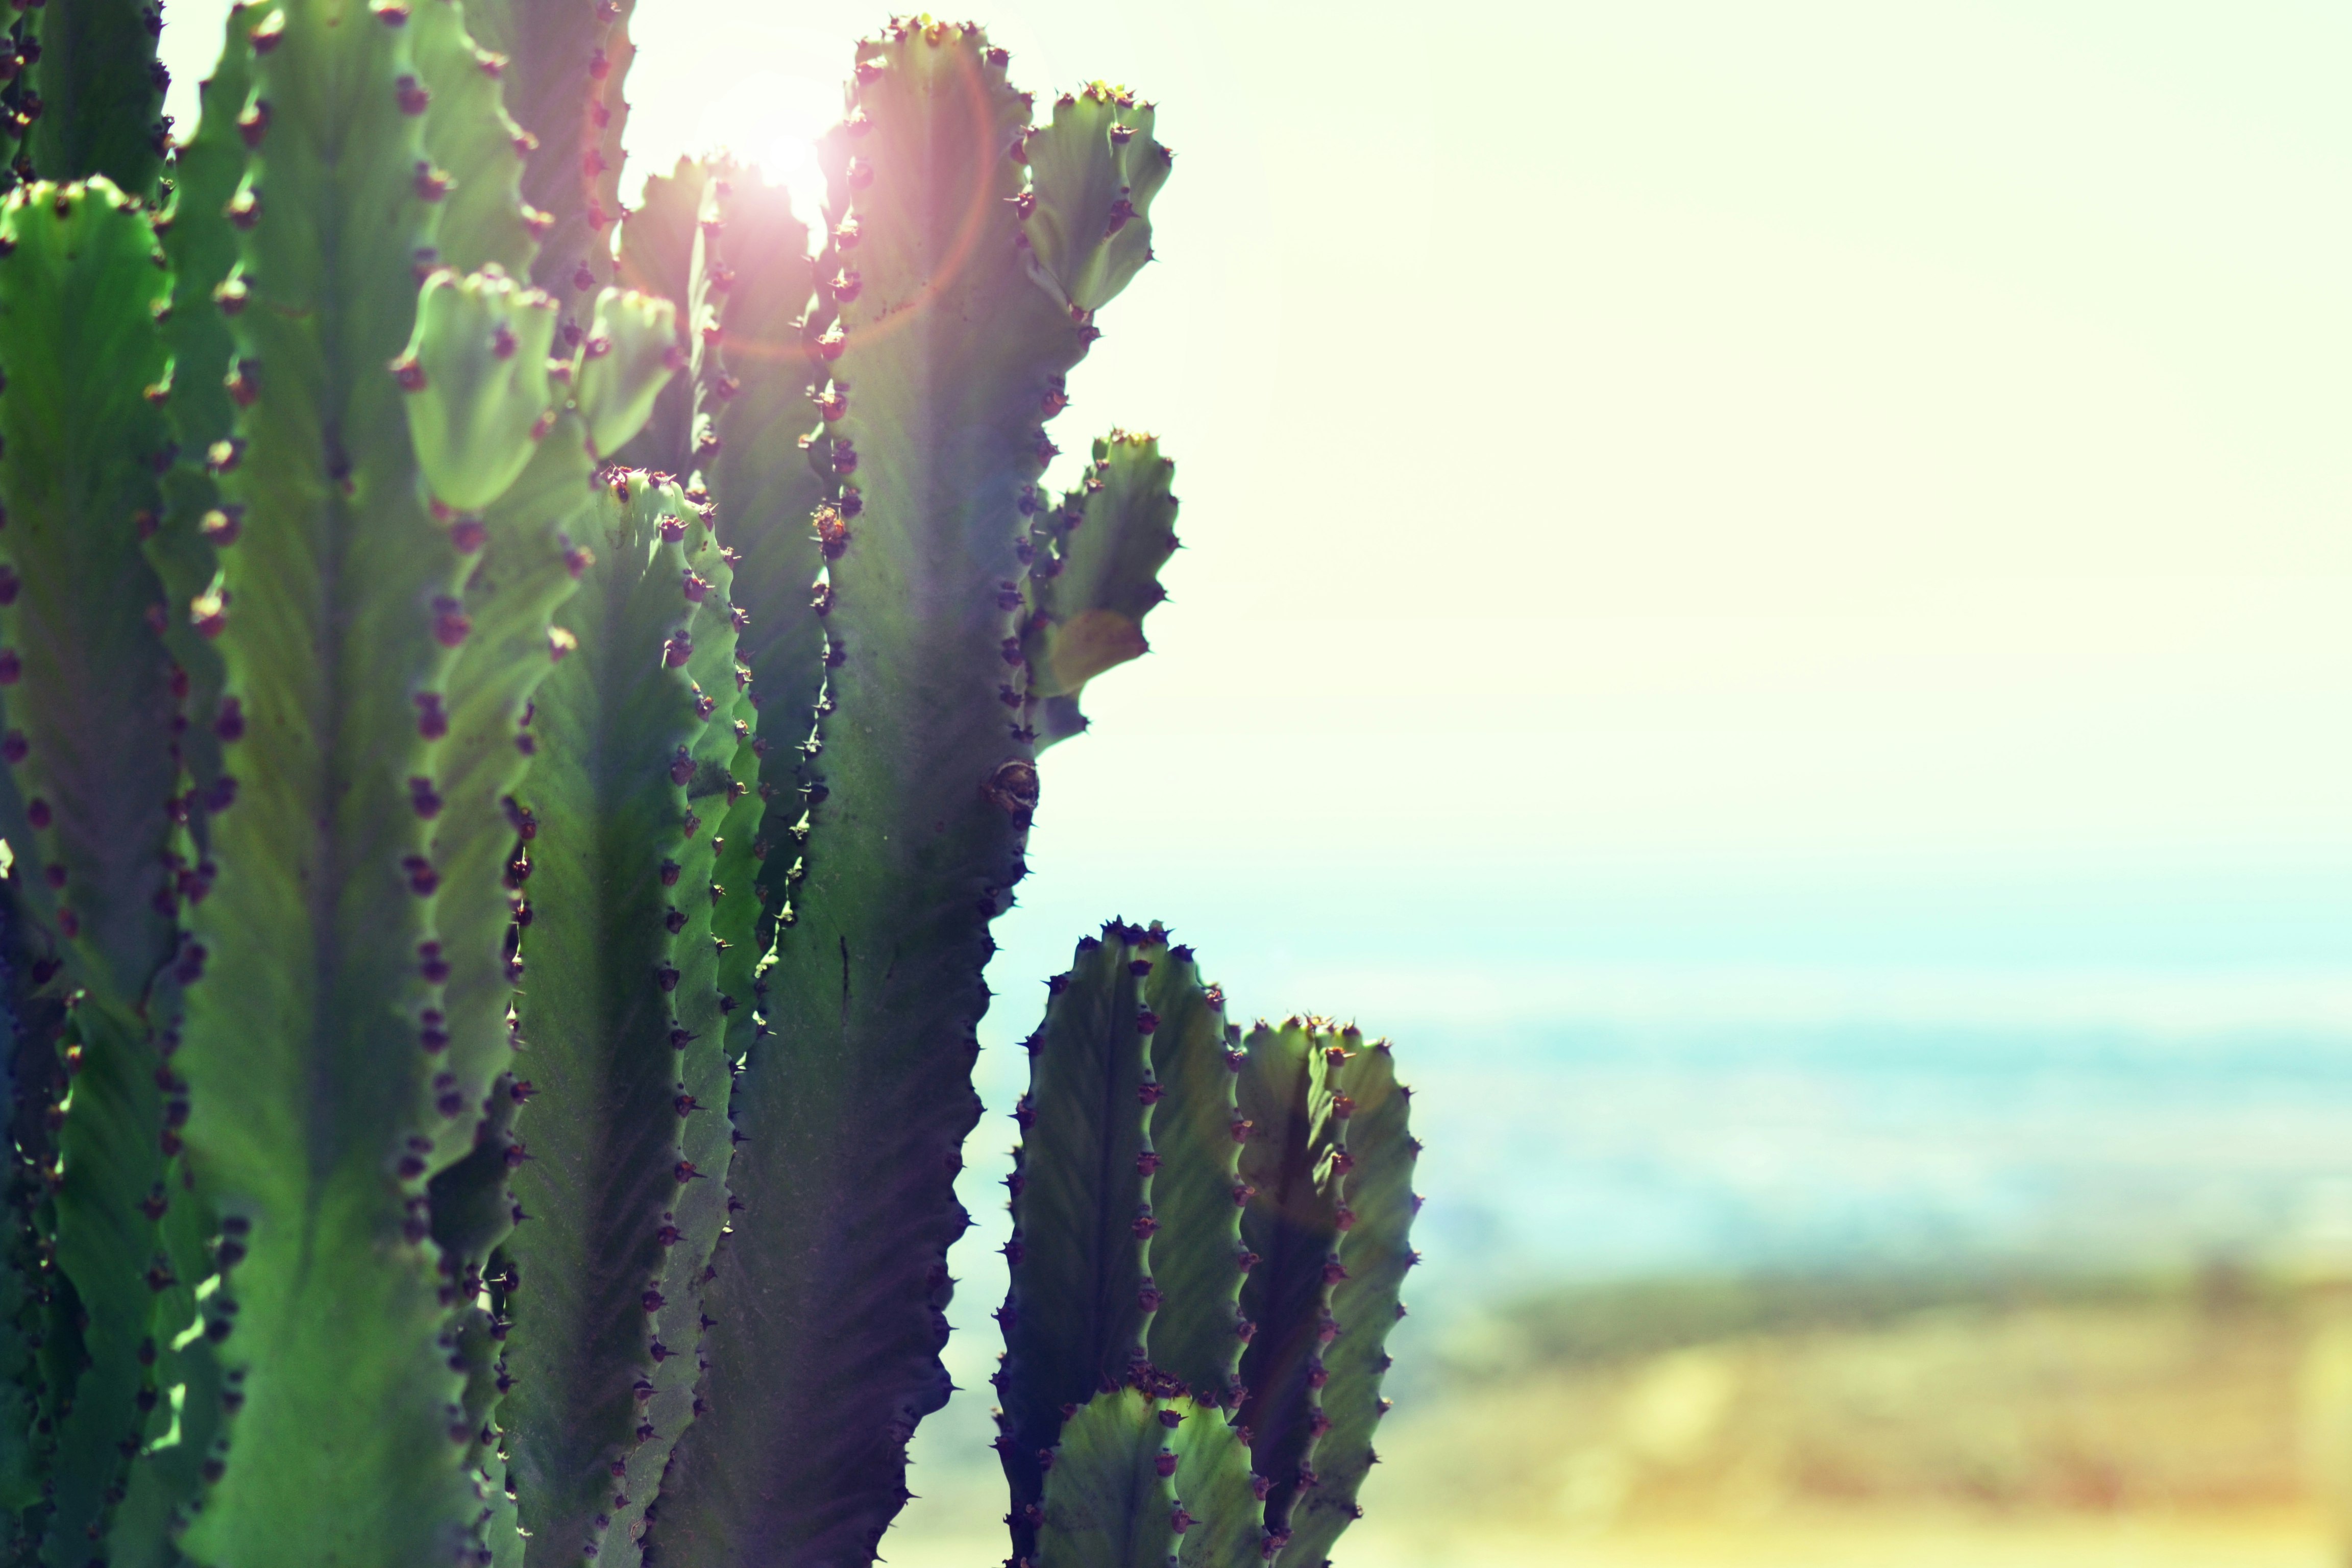 cacti near ocean during daytime